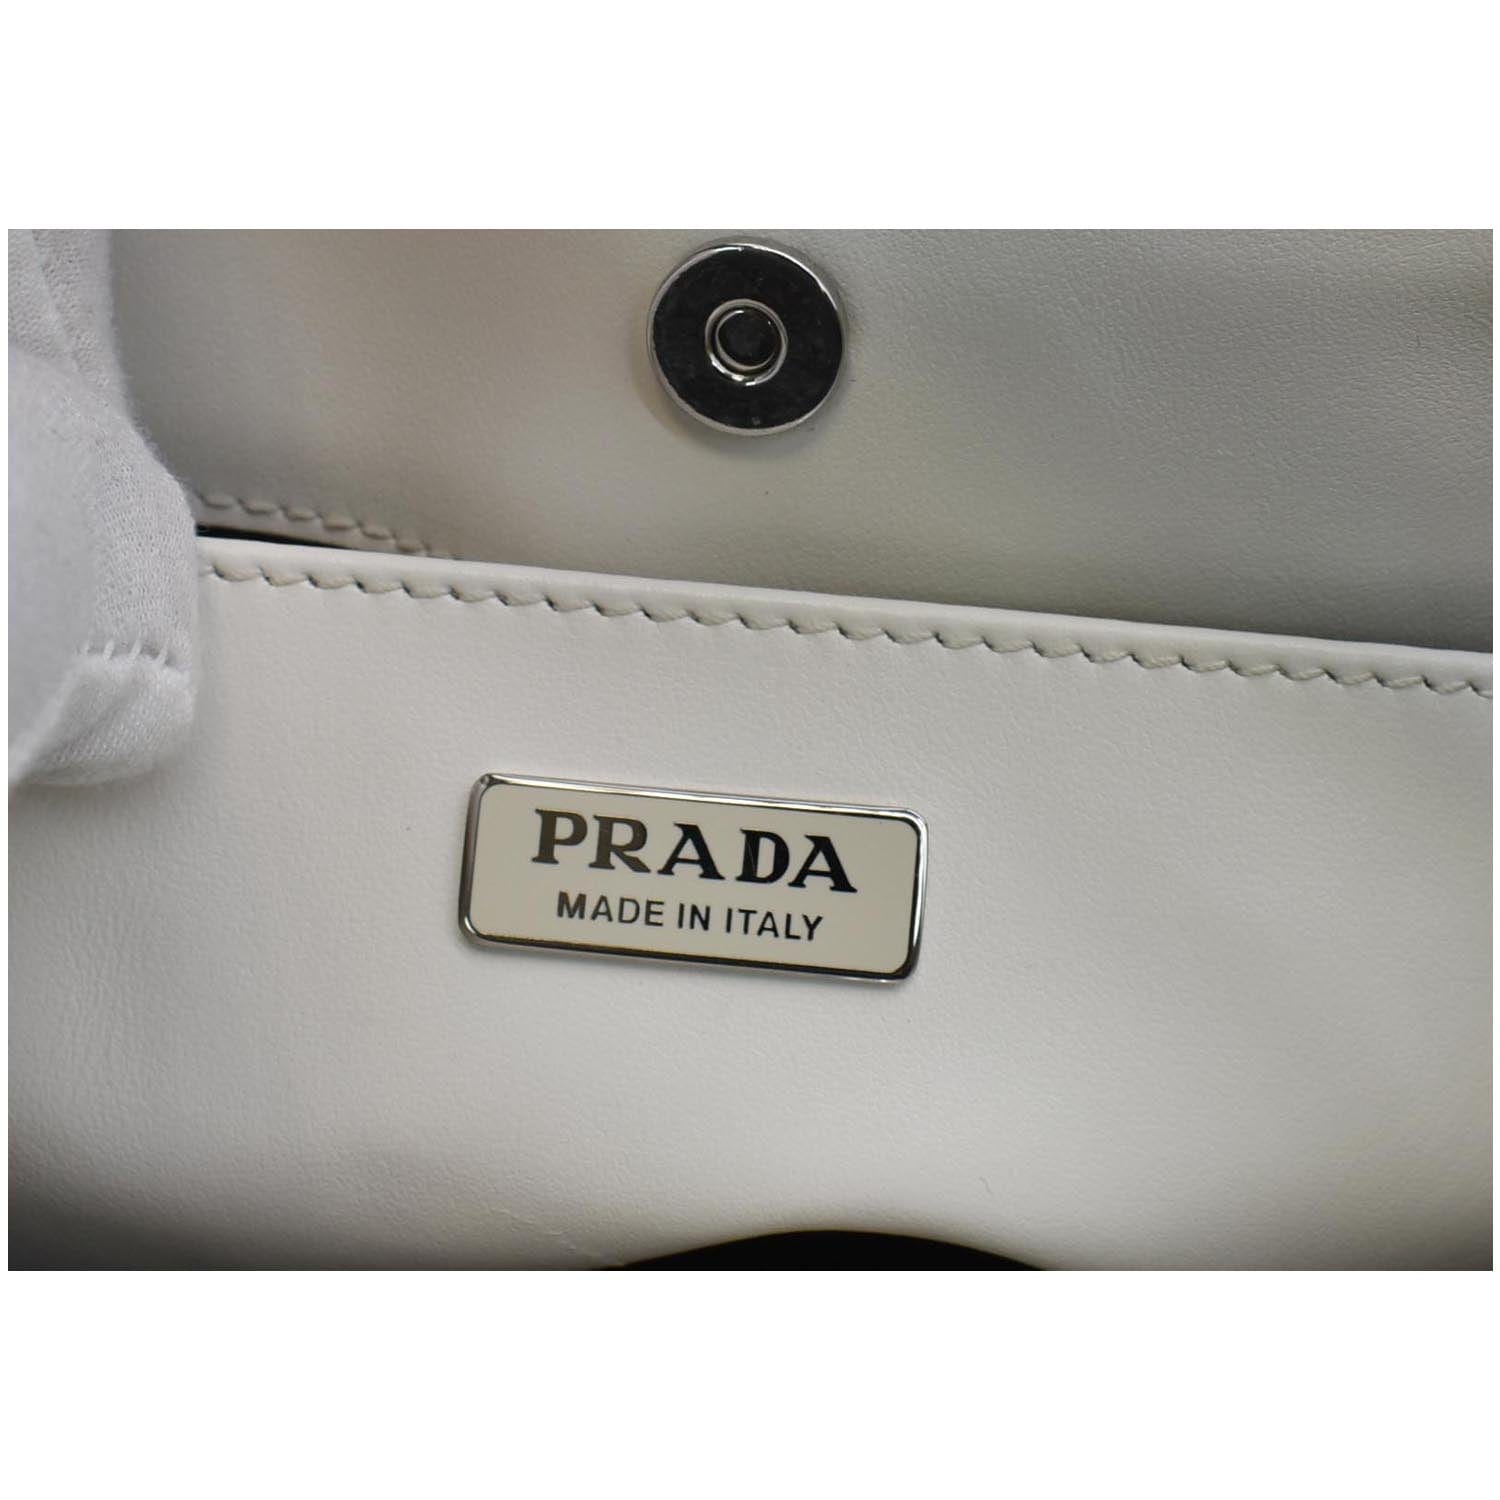 Prada Cleo Brushed Leather Mini Bag in White